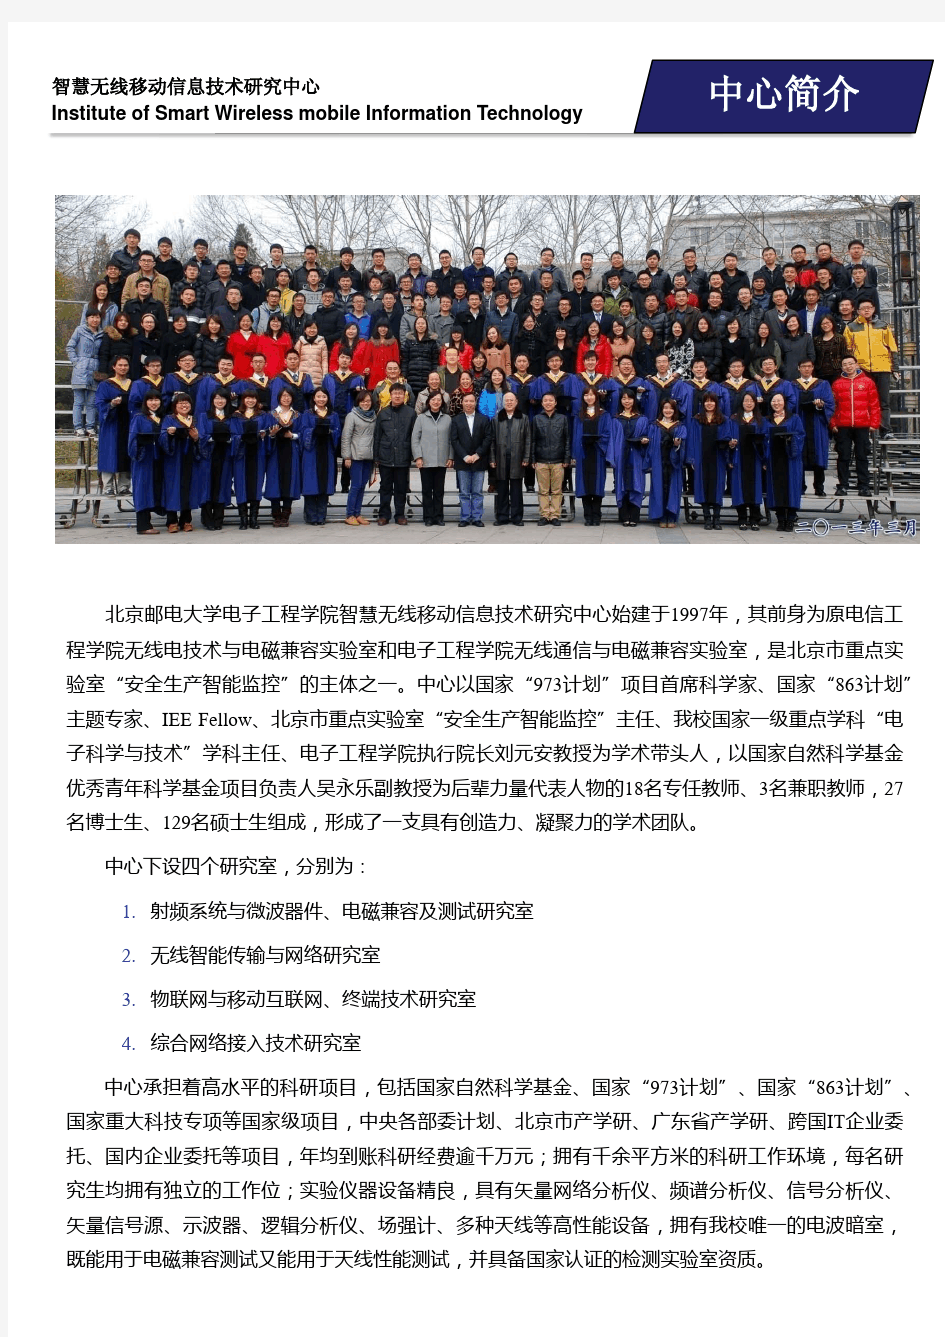 北京邮电大学智慧无线移动信息技术研究中心宣传手册2015年